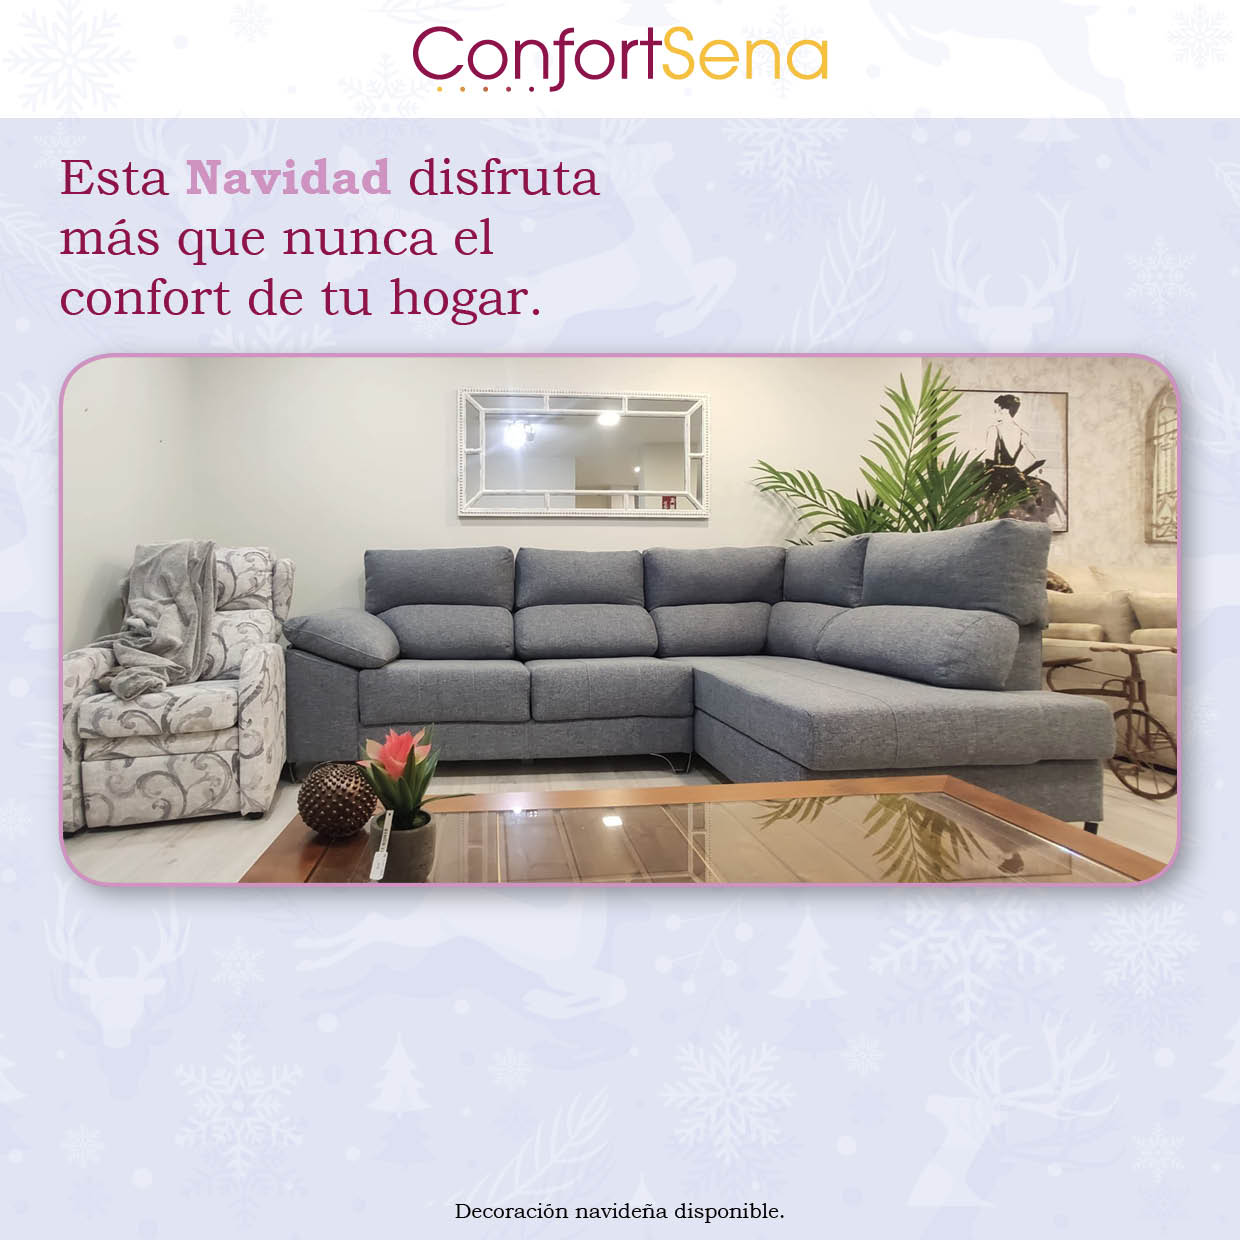 navidad-confortsena-muebles-sofas-granada22